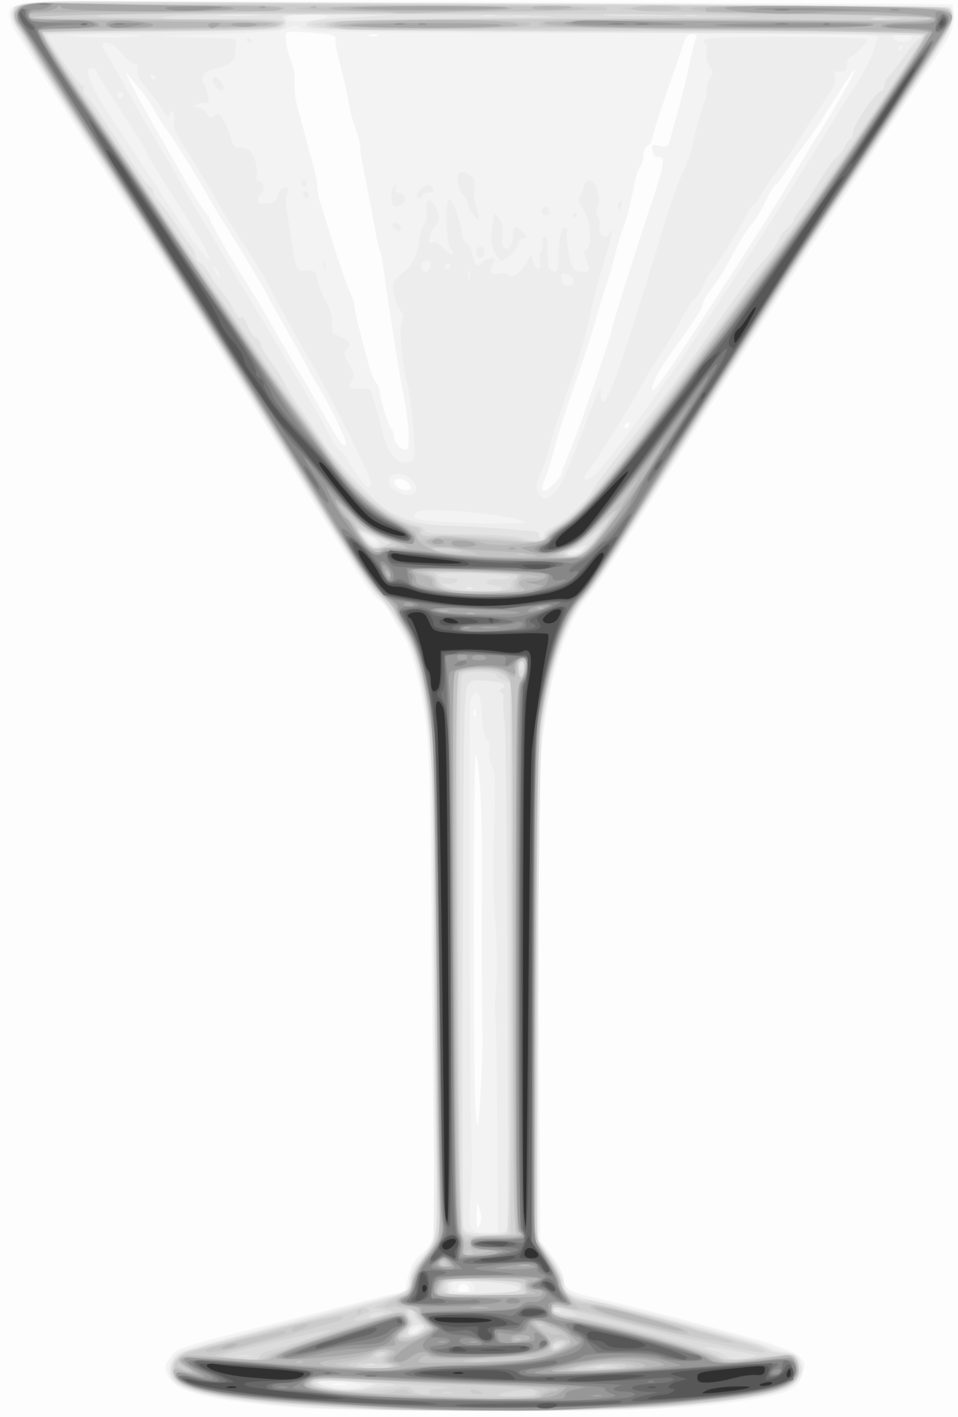 martini clipart glassware